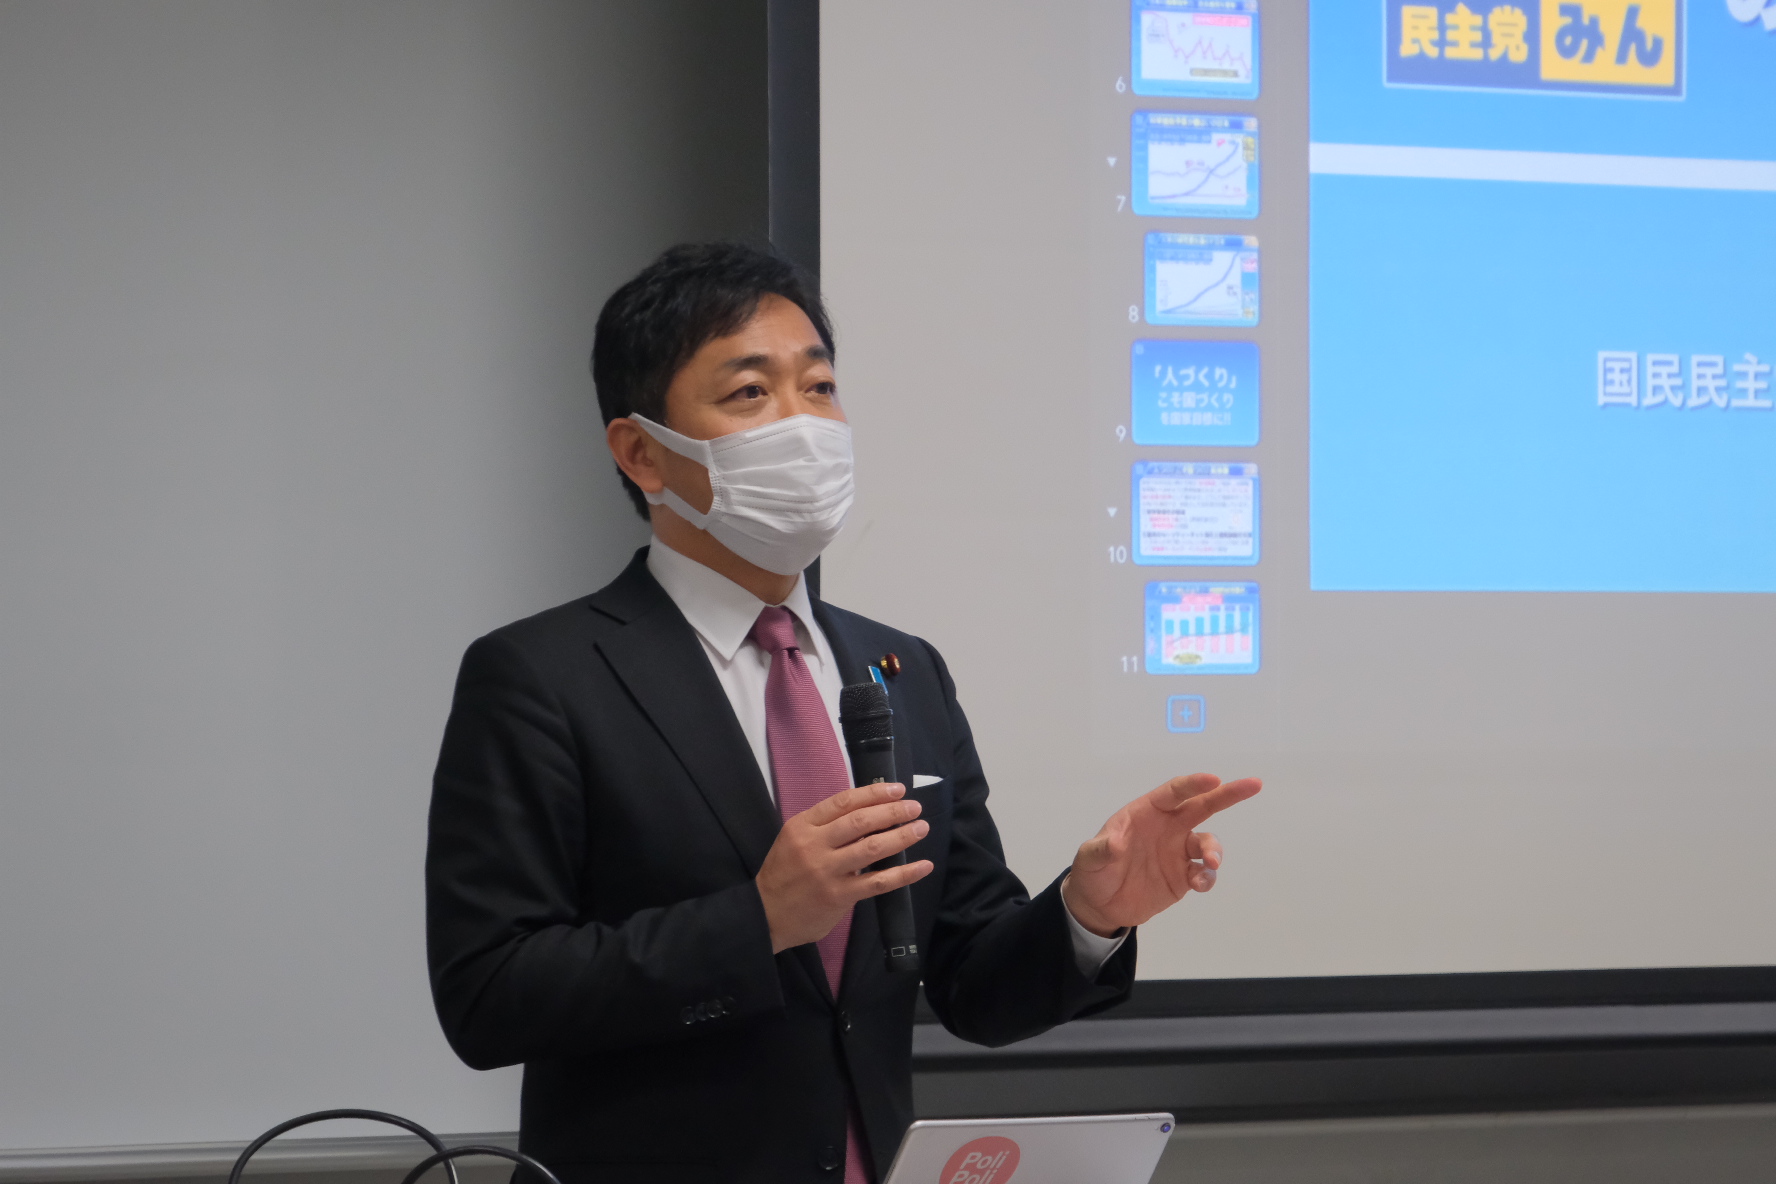 【大阪】「自分以外の誰かのために頑張ることができるリーダーになってほしい」玉木代表が模擬選挙に参加